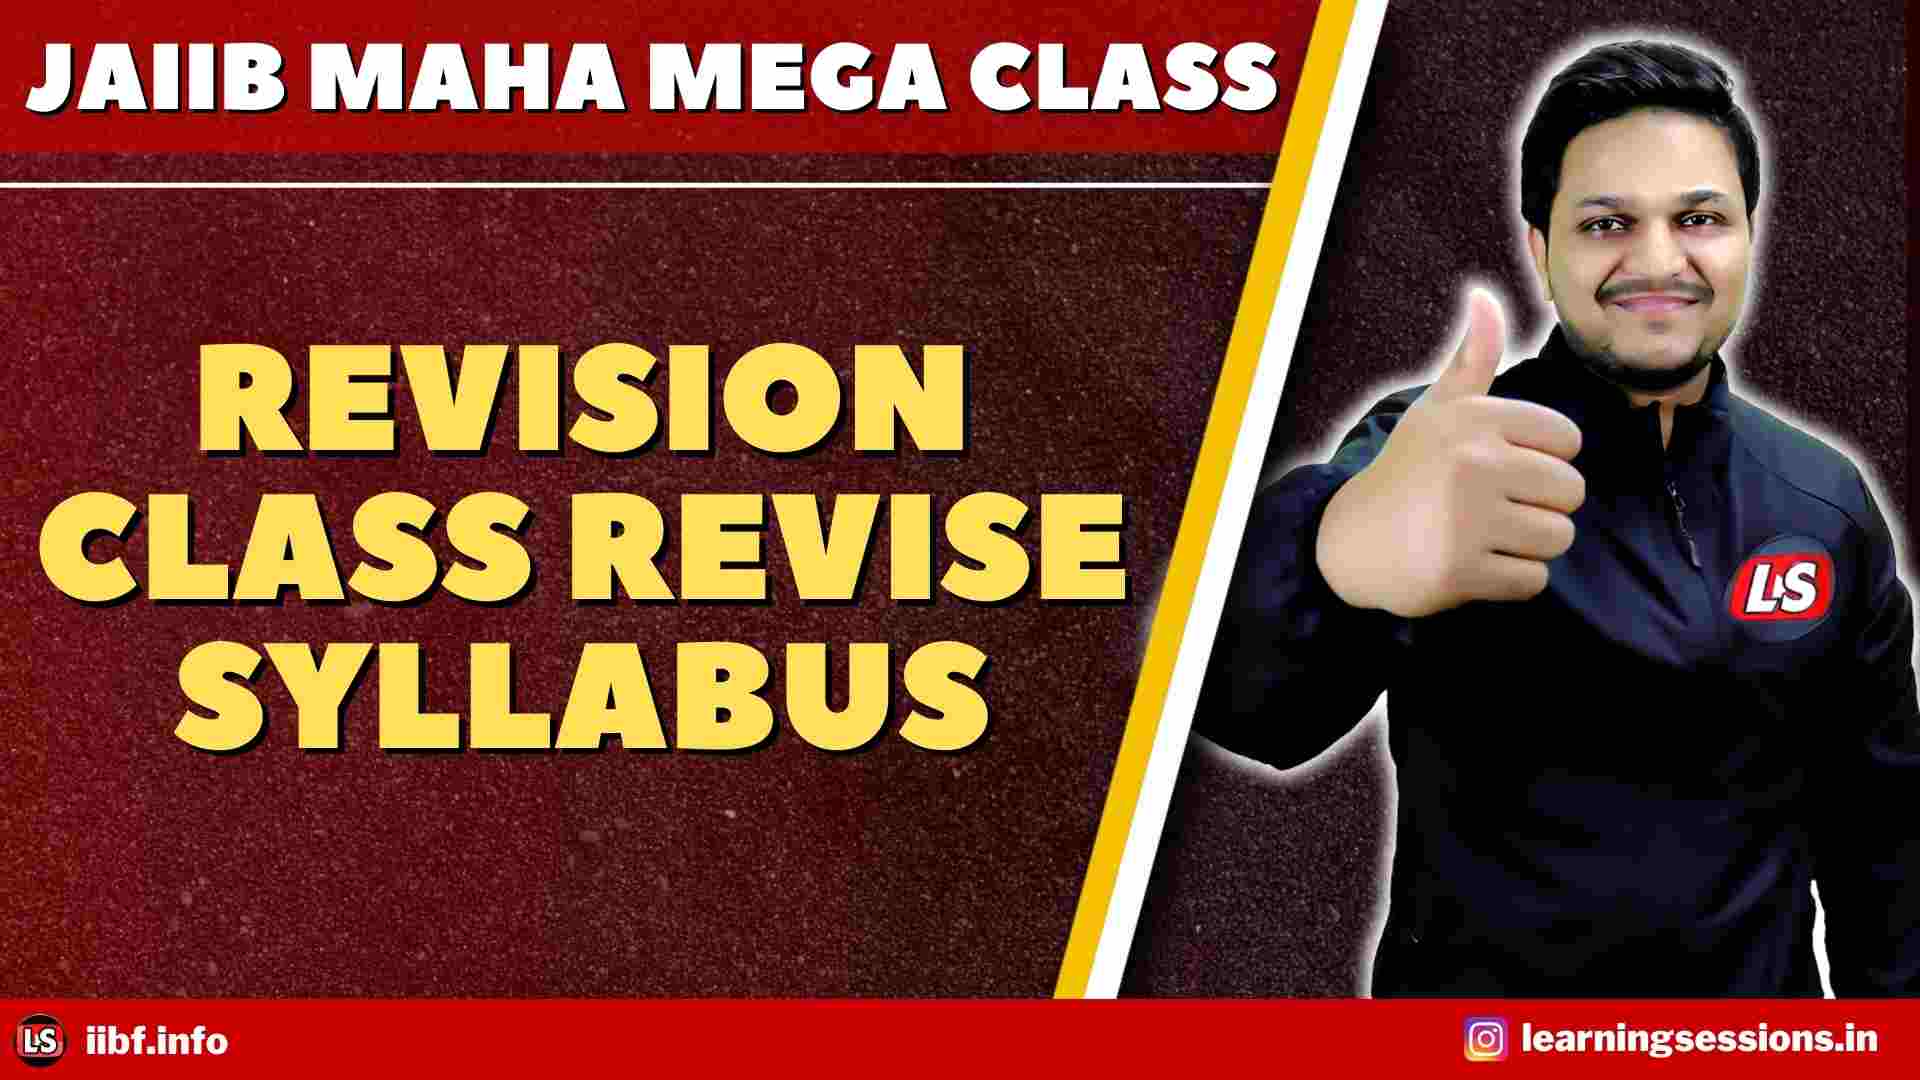 JAIIB 2022 MAHA MEGA CLASS REVISION CLASS REVISE SYLLABUS